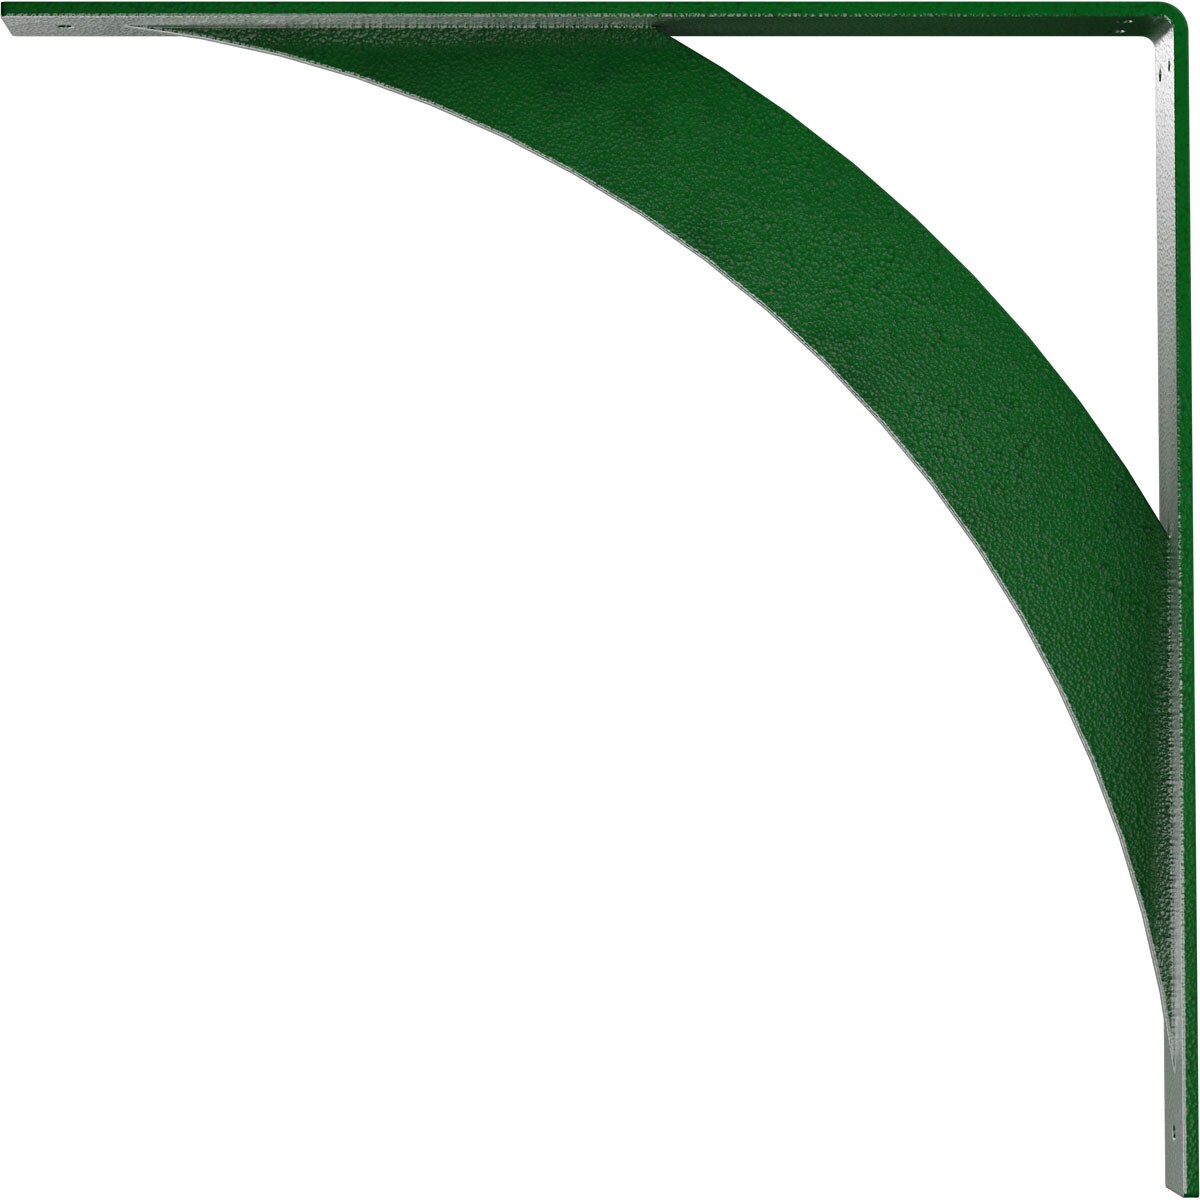 Ekena Millwork Legacy 20-in x 2-in x 20-in Green Steel Countertop Support Bracket